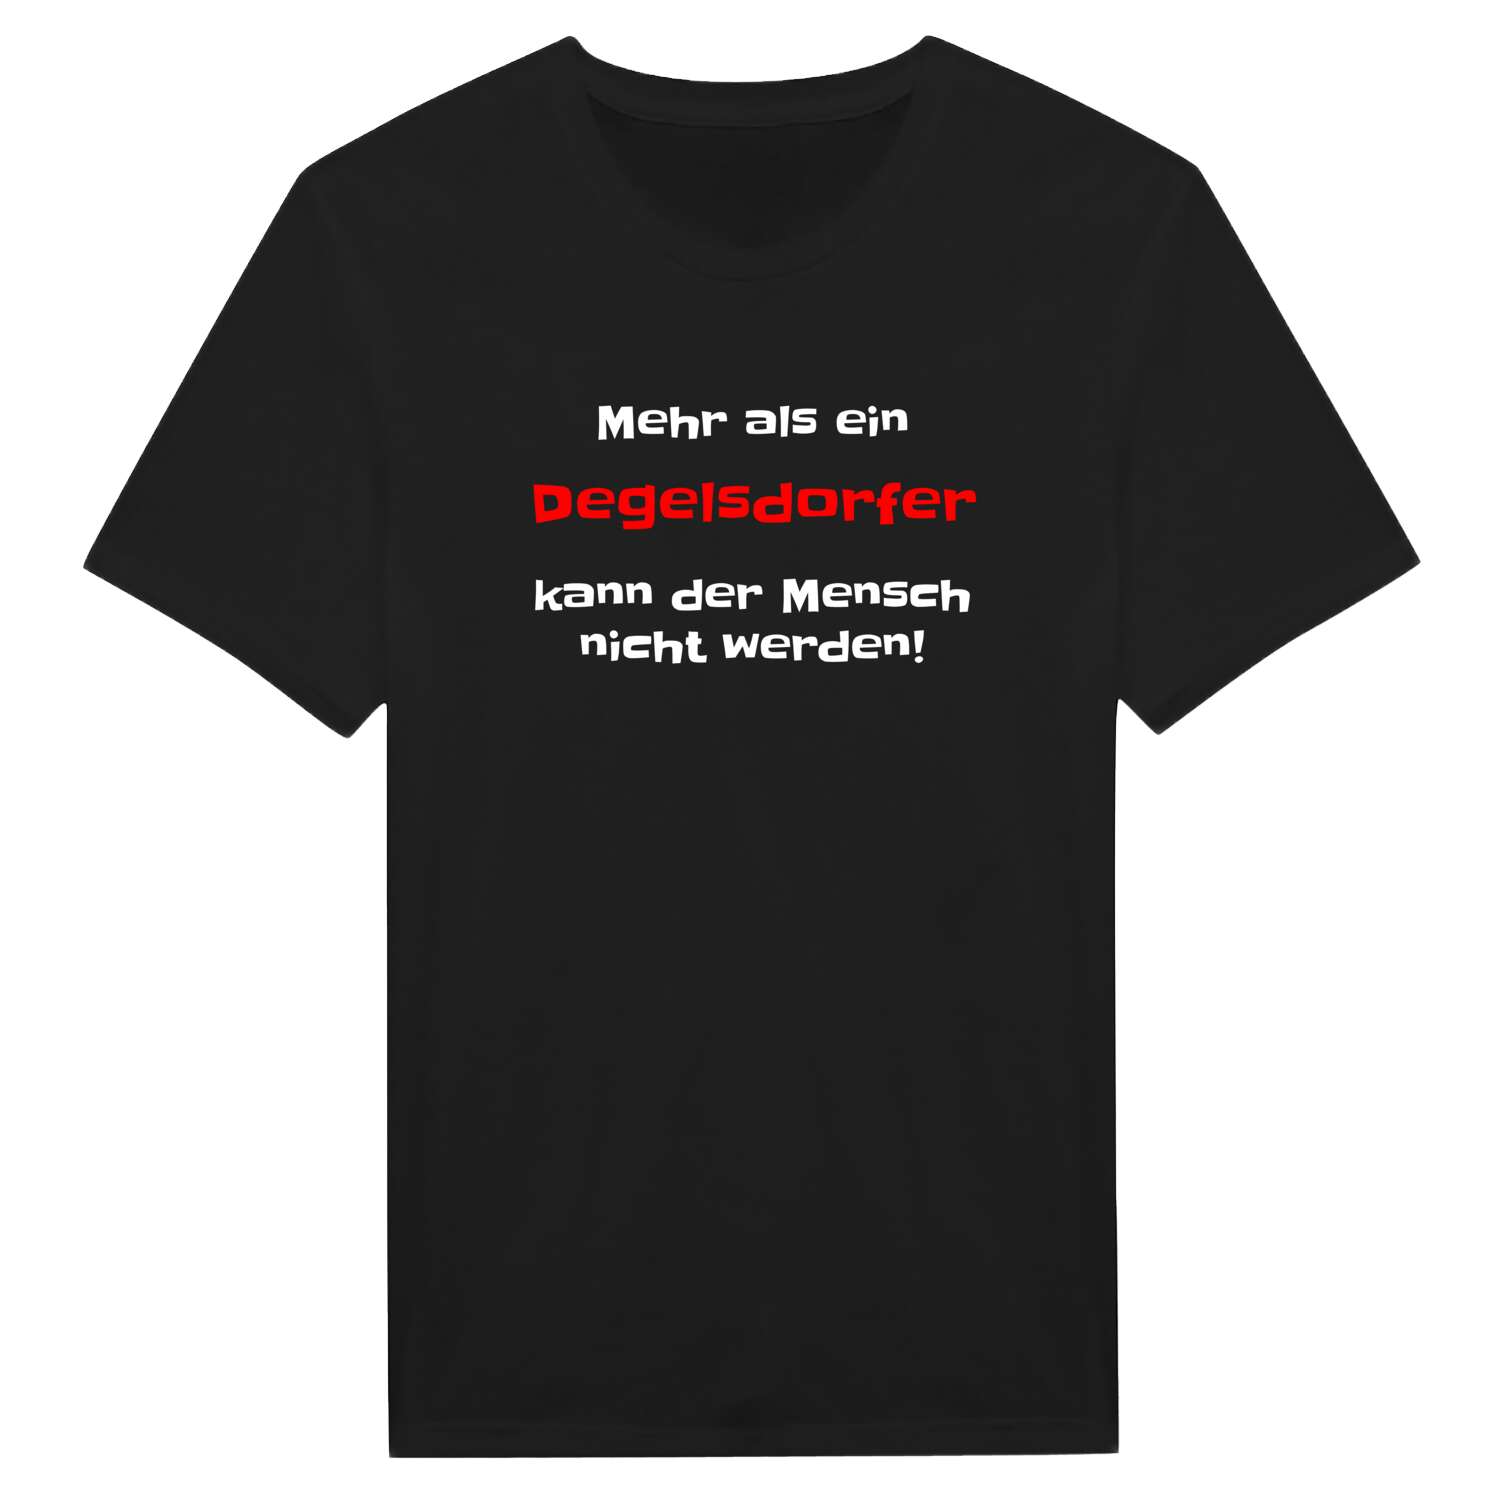 Degelsdorf T-Shirt »Mehr als ein«